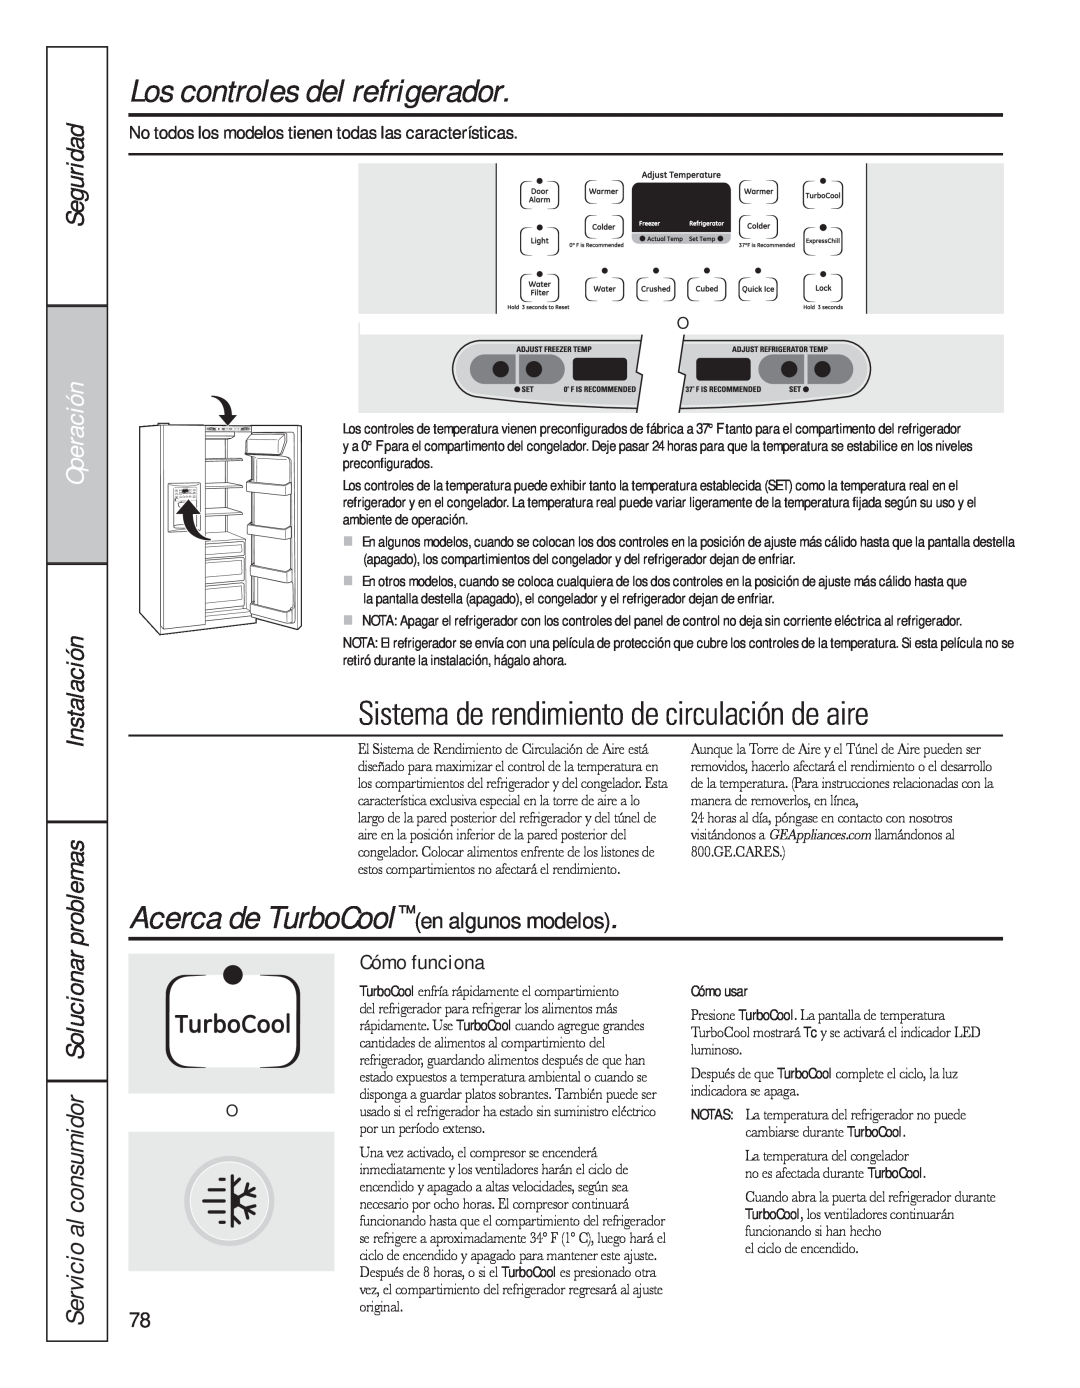 GE 200D8074P044 Los controles del refrigerador, Sistema de rendimiento de circulación de aire, Seguridad, Operación 